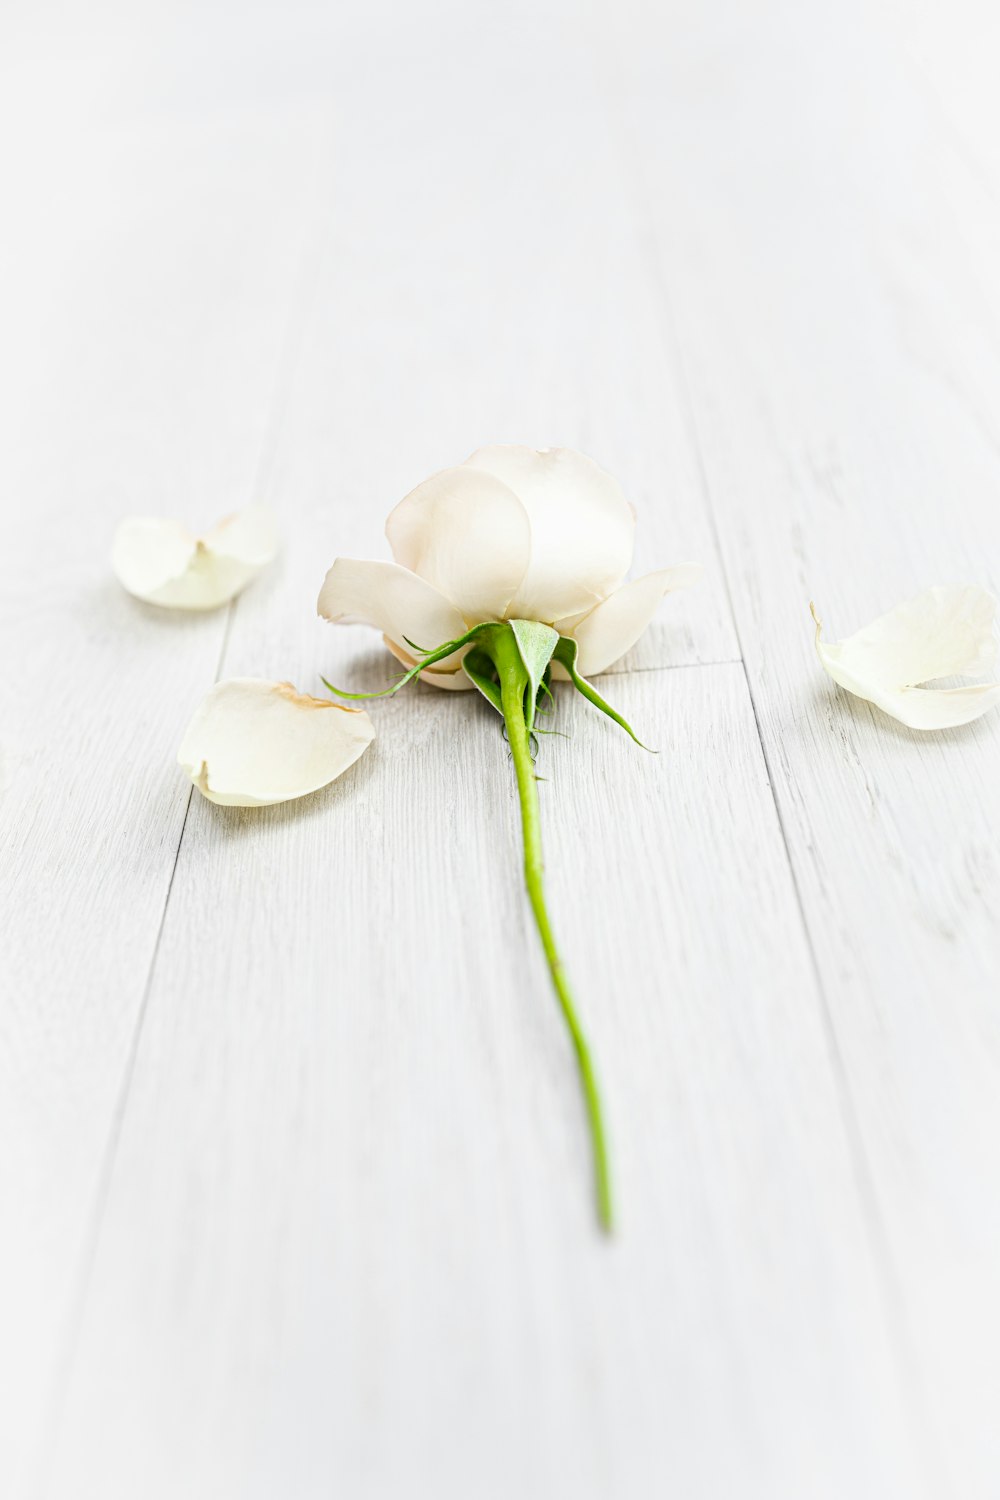 white flower on white wooden table